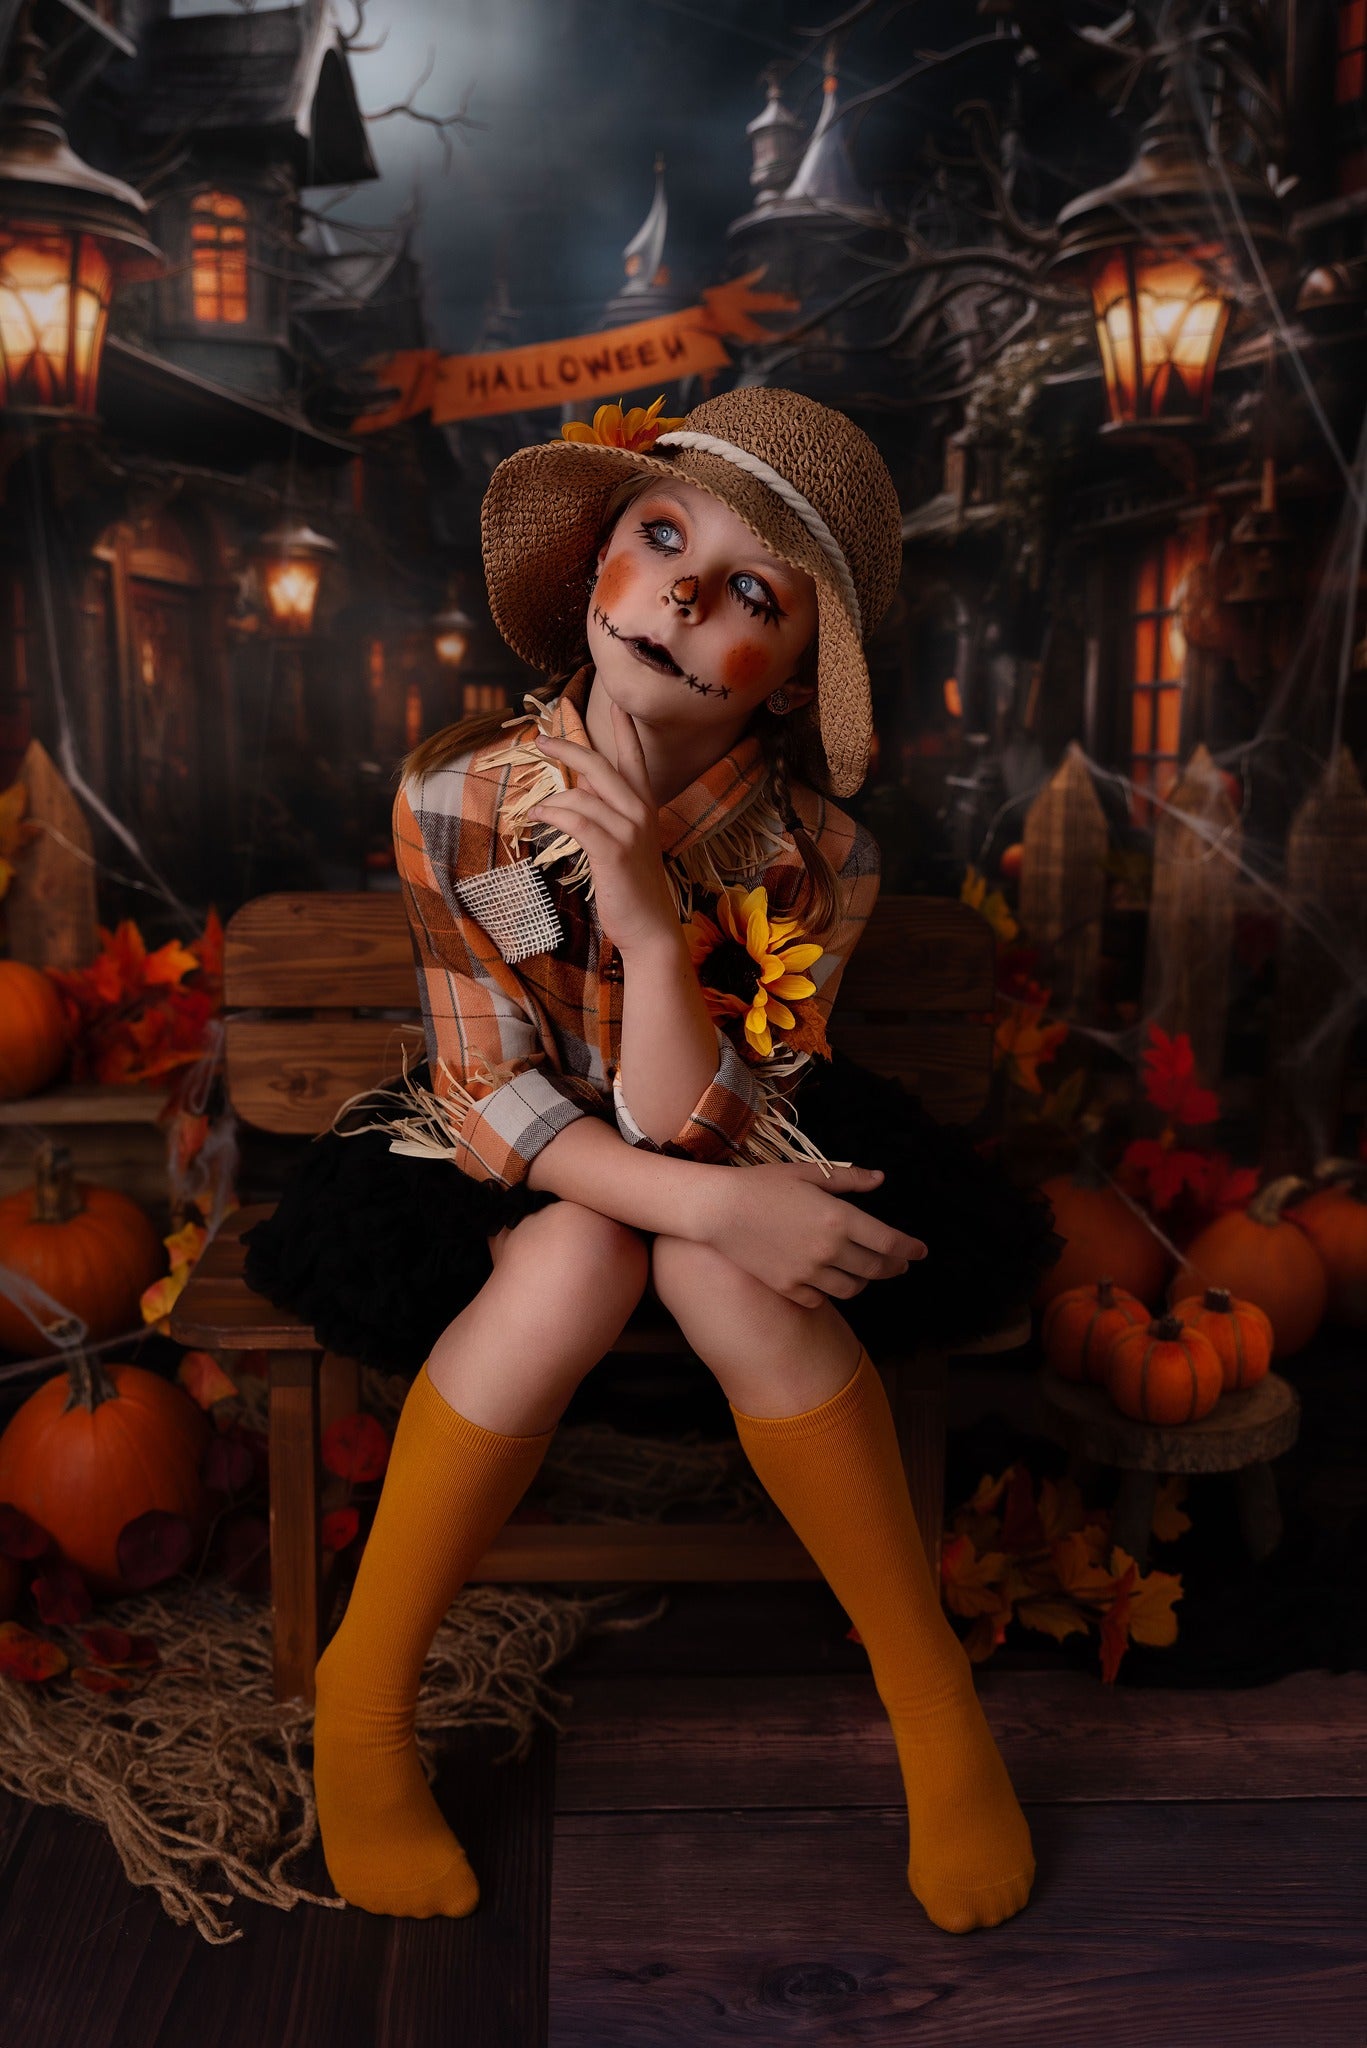 Kate Halloween Rue Citrouille Toile de fond conçu par Emetselch